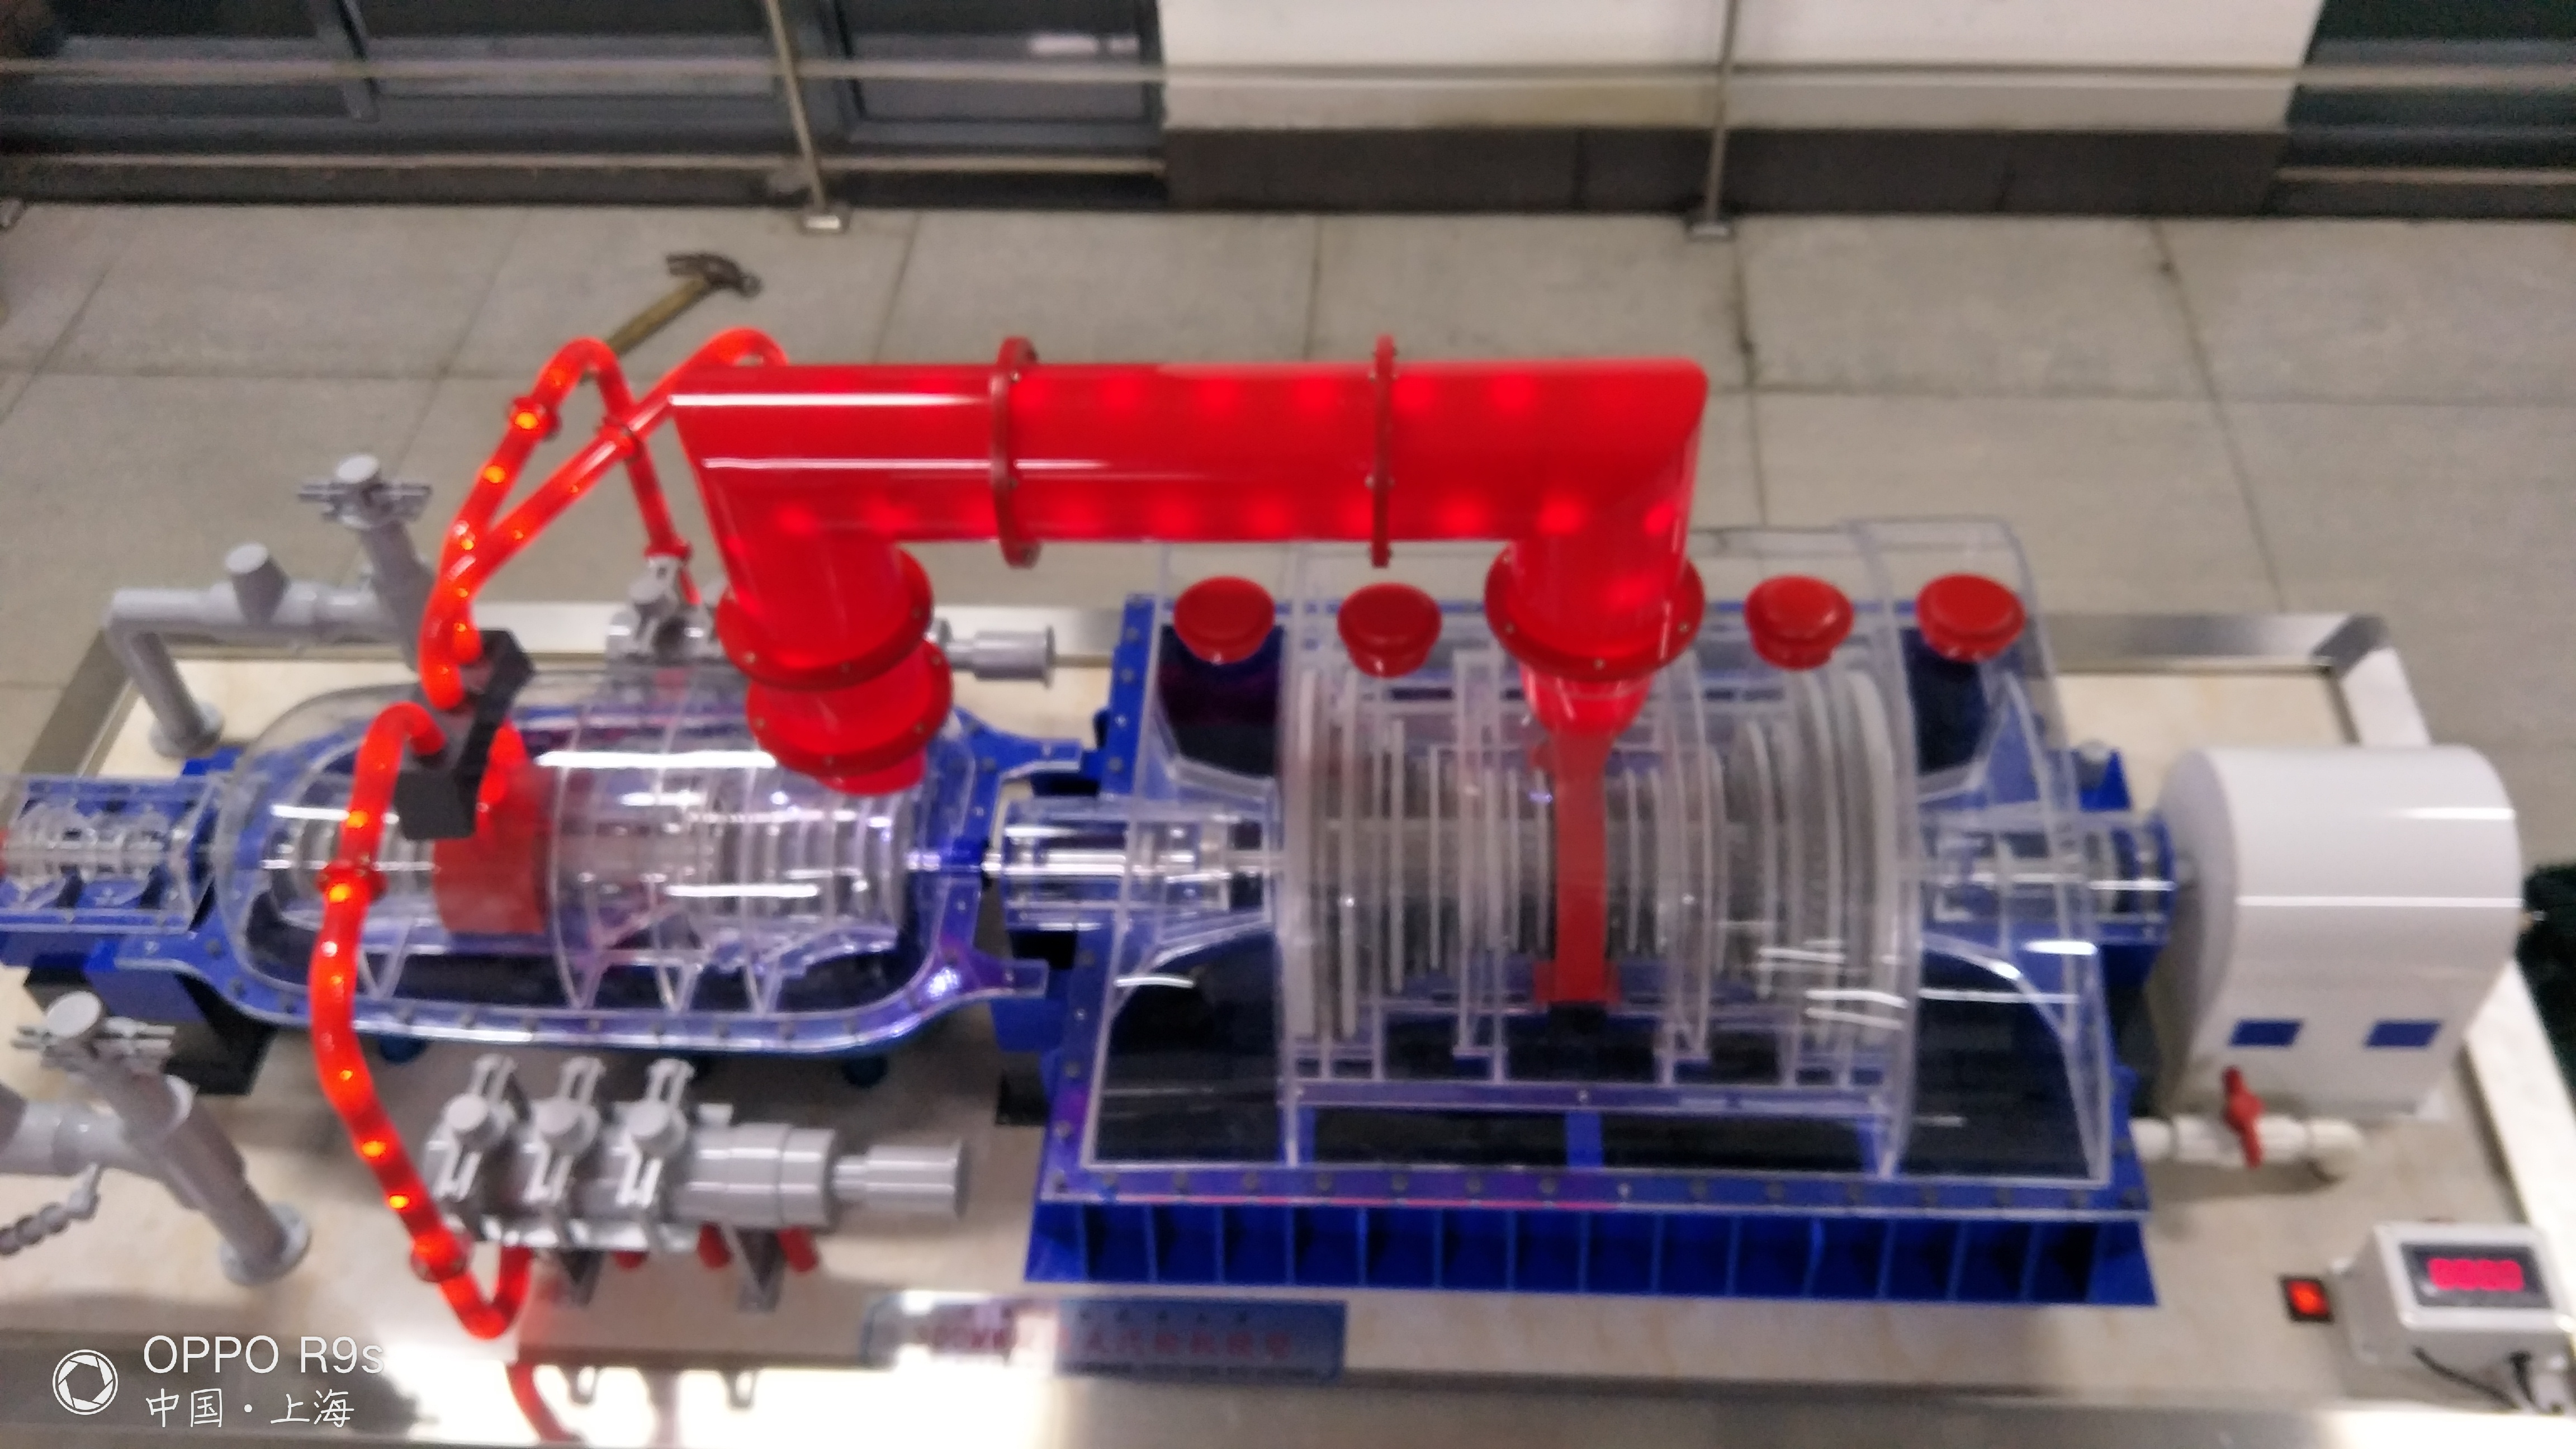 燃气-蒸汽联合循环发电机组模型系统